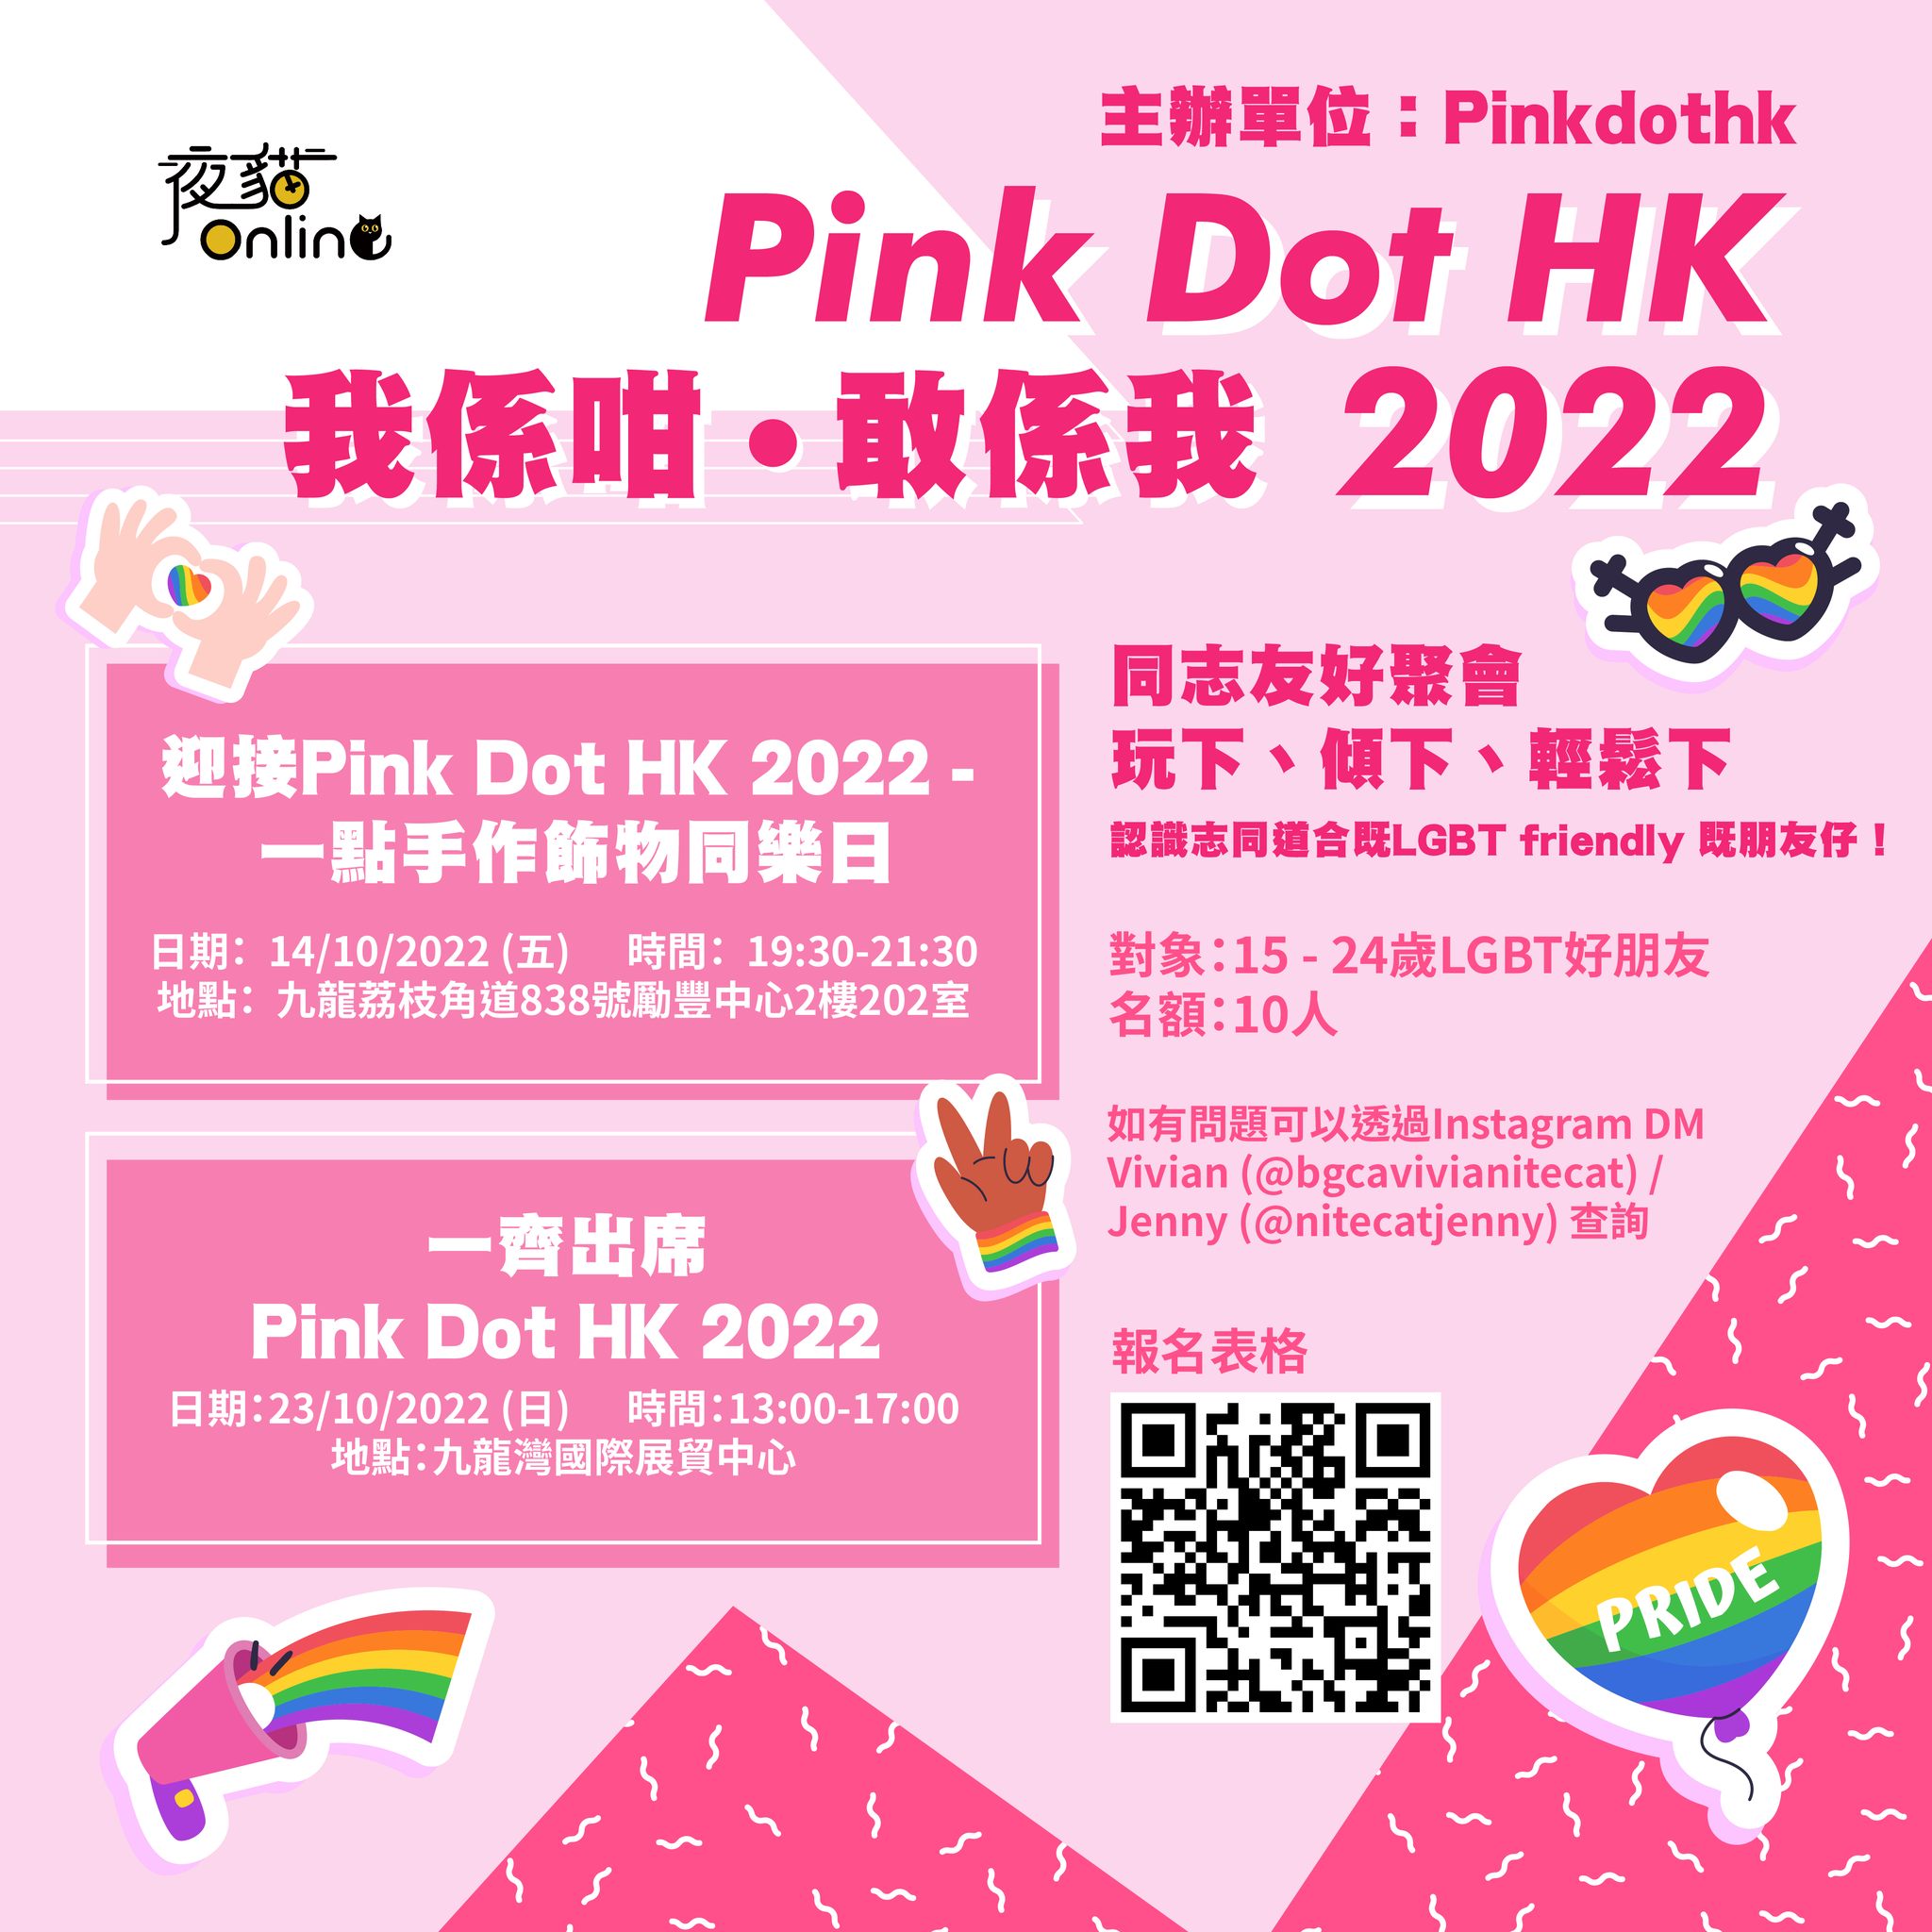 Pink Dot HK 2022 既大會主題係《我係咁・敢係我》